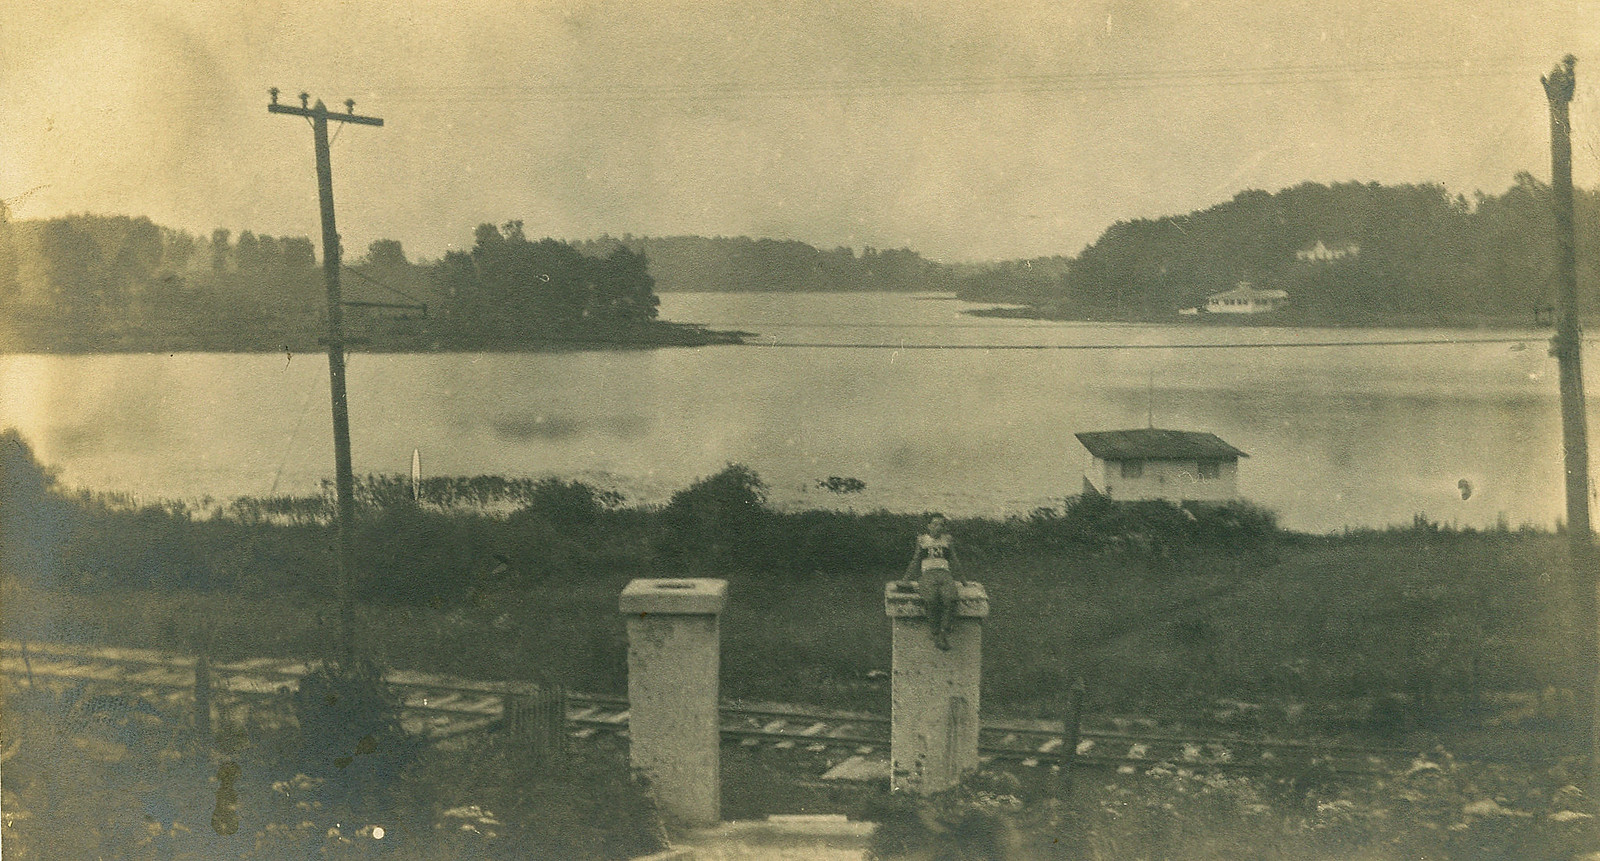 View at Long Lake on Valparaiso and Northern Interurban, circa 1910 - Valparaiso, Indiana